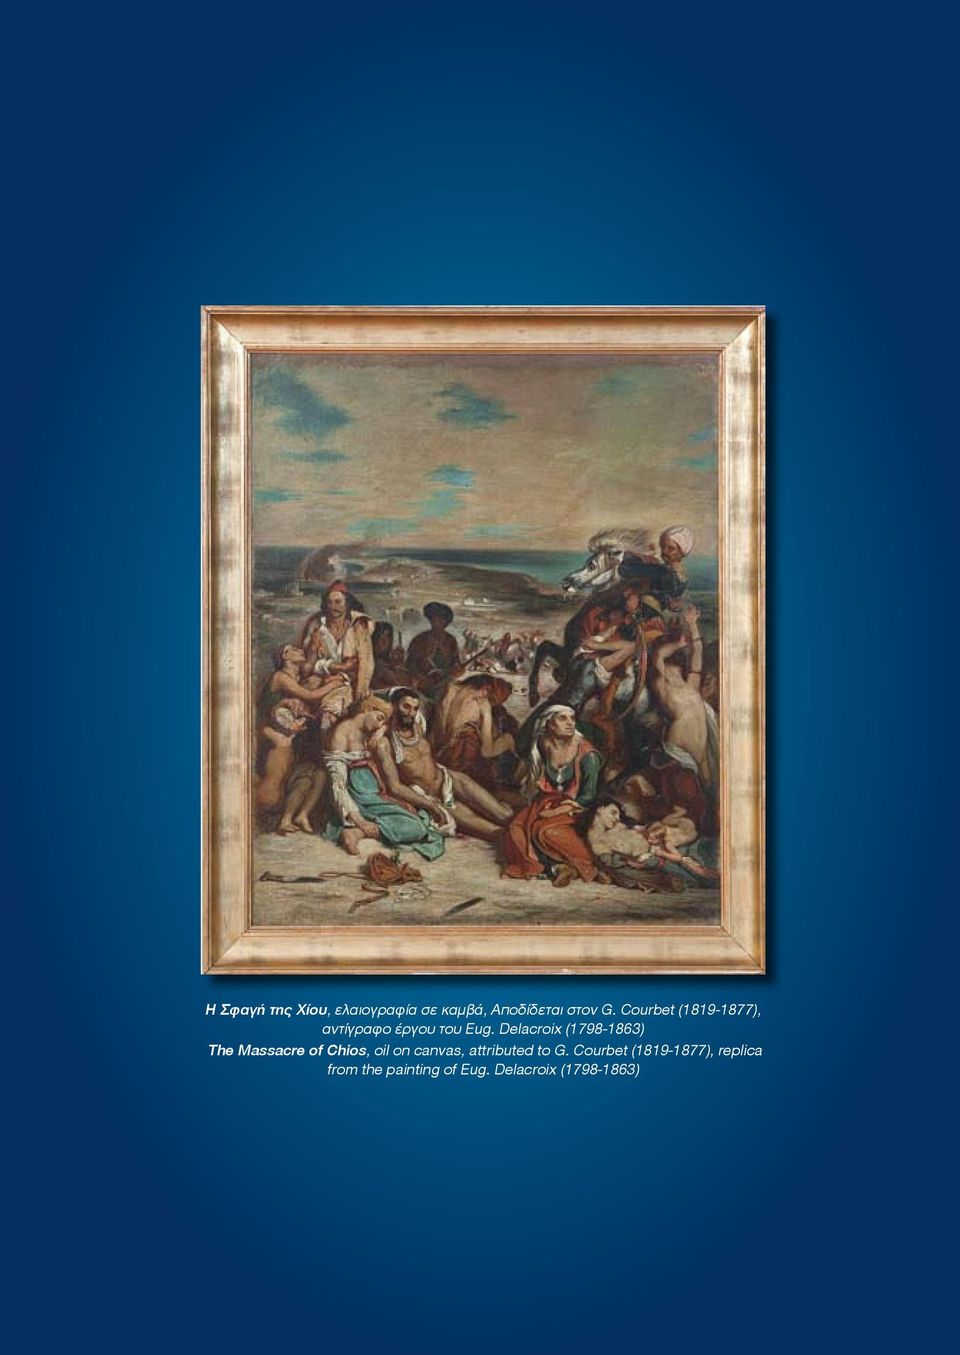 Delacroix (1798-1863) The Massacre of Chios, oil on canvas,